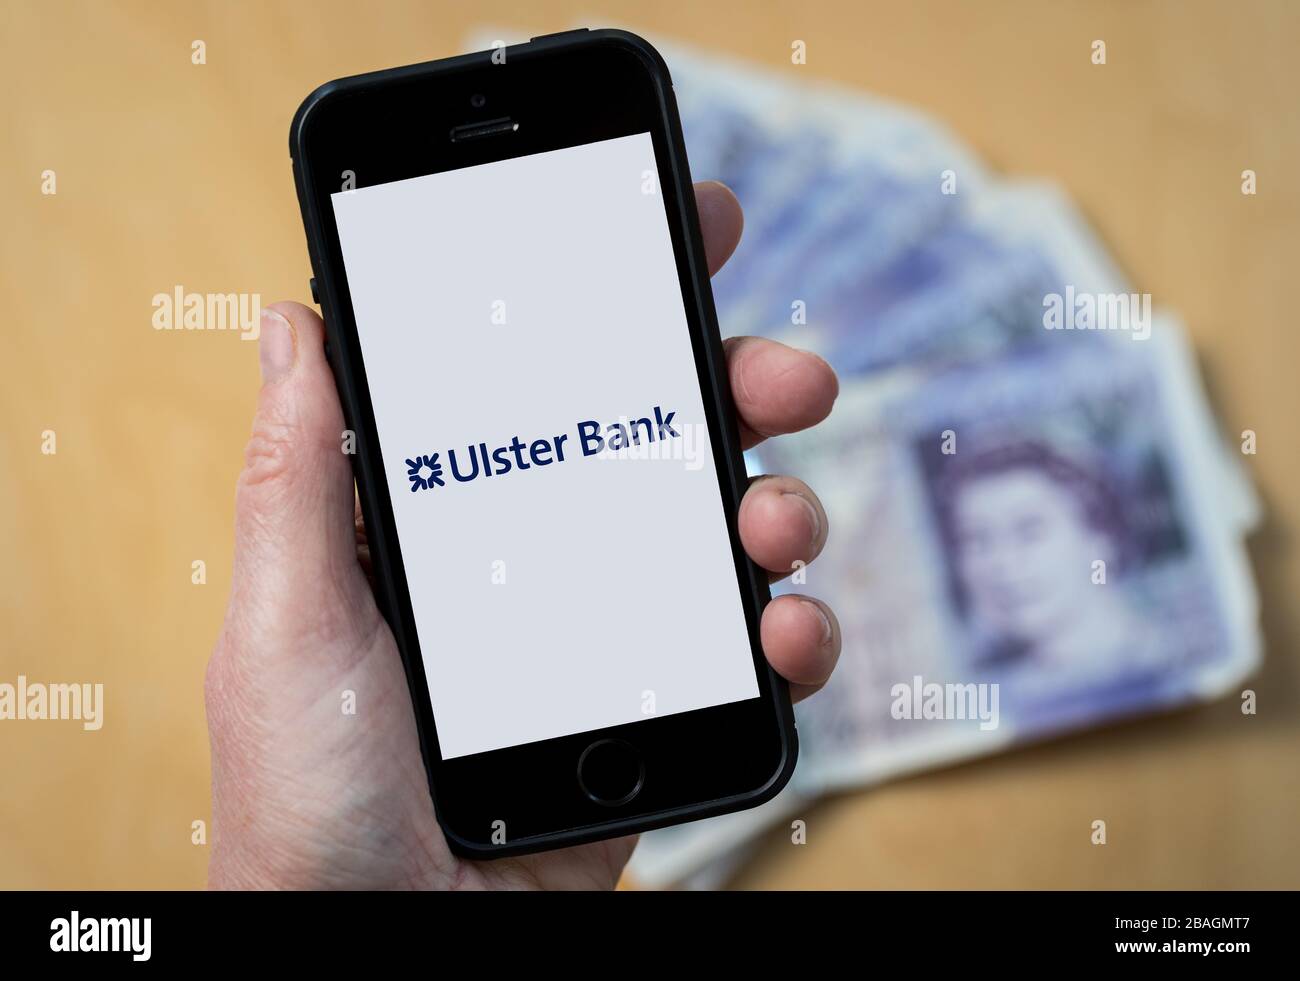 Eine Frau, die das Logo der Ulster Bank auf einem Mobiltelefon betrachtet. (Nur redaktionelle Verwendung) Stockfoto